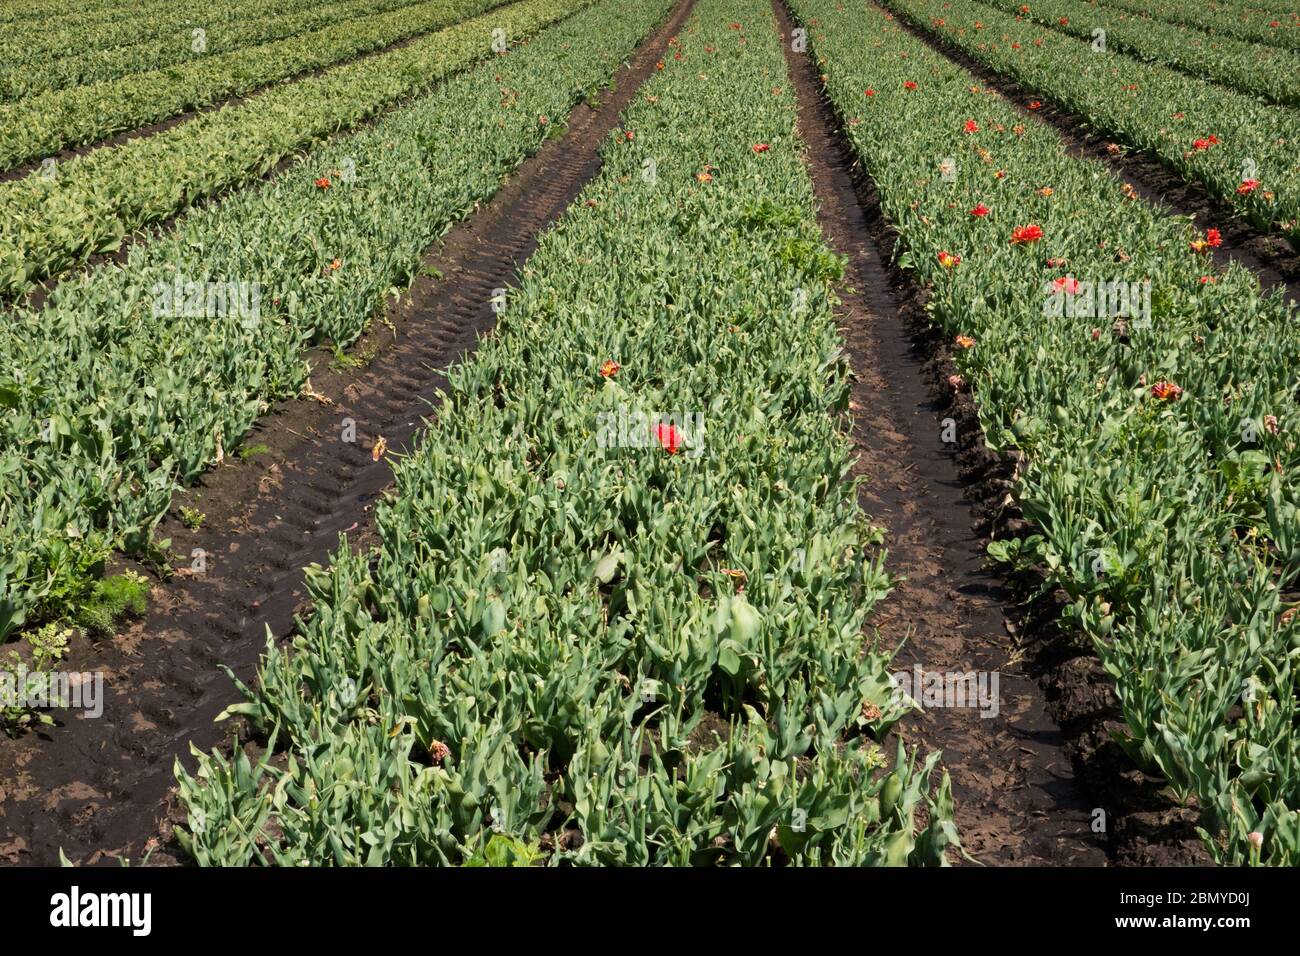 Tulpenfeld für den Anbau von Zwiebeln in der niederländischen Landschaft werden Blumenköpfe entfernt, um die Produktion von Zwiebeln anzuregen Stockfoto